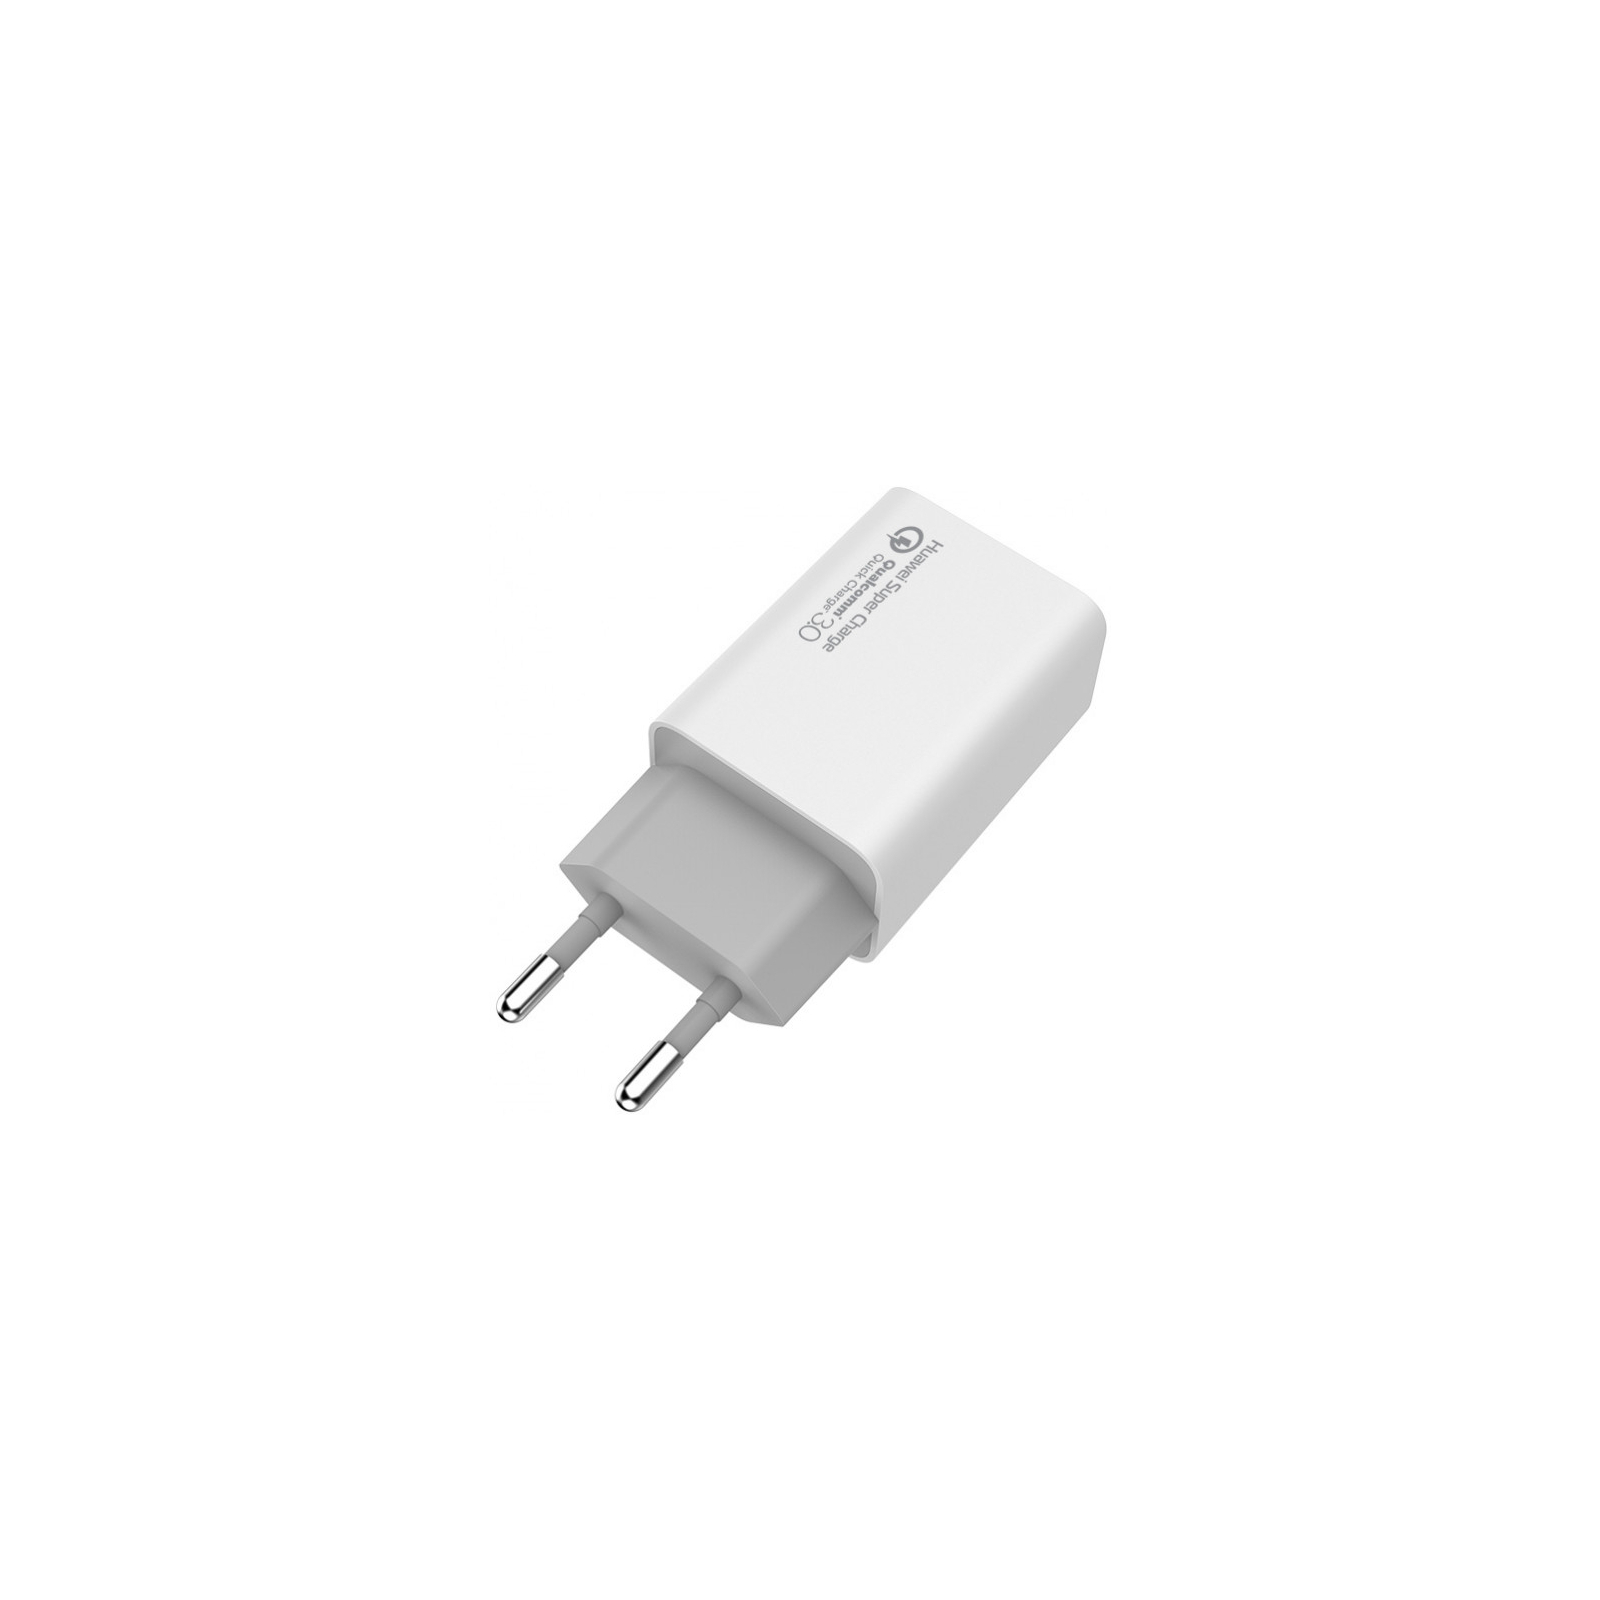 Зарядний пристрій ColorWay 1USB Huawei Super Charge/Quick Charge 3.0, 4A (20W) (CW-CHS014Q-WT) зображення 4